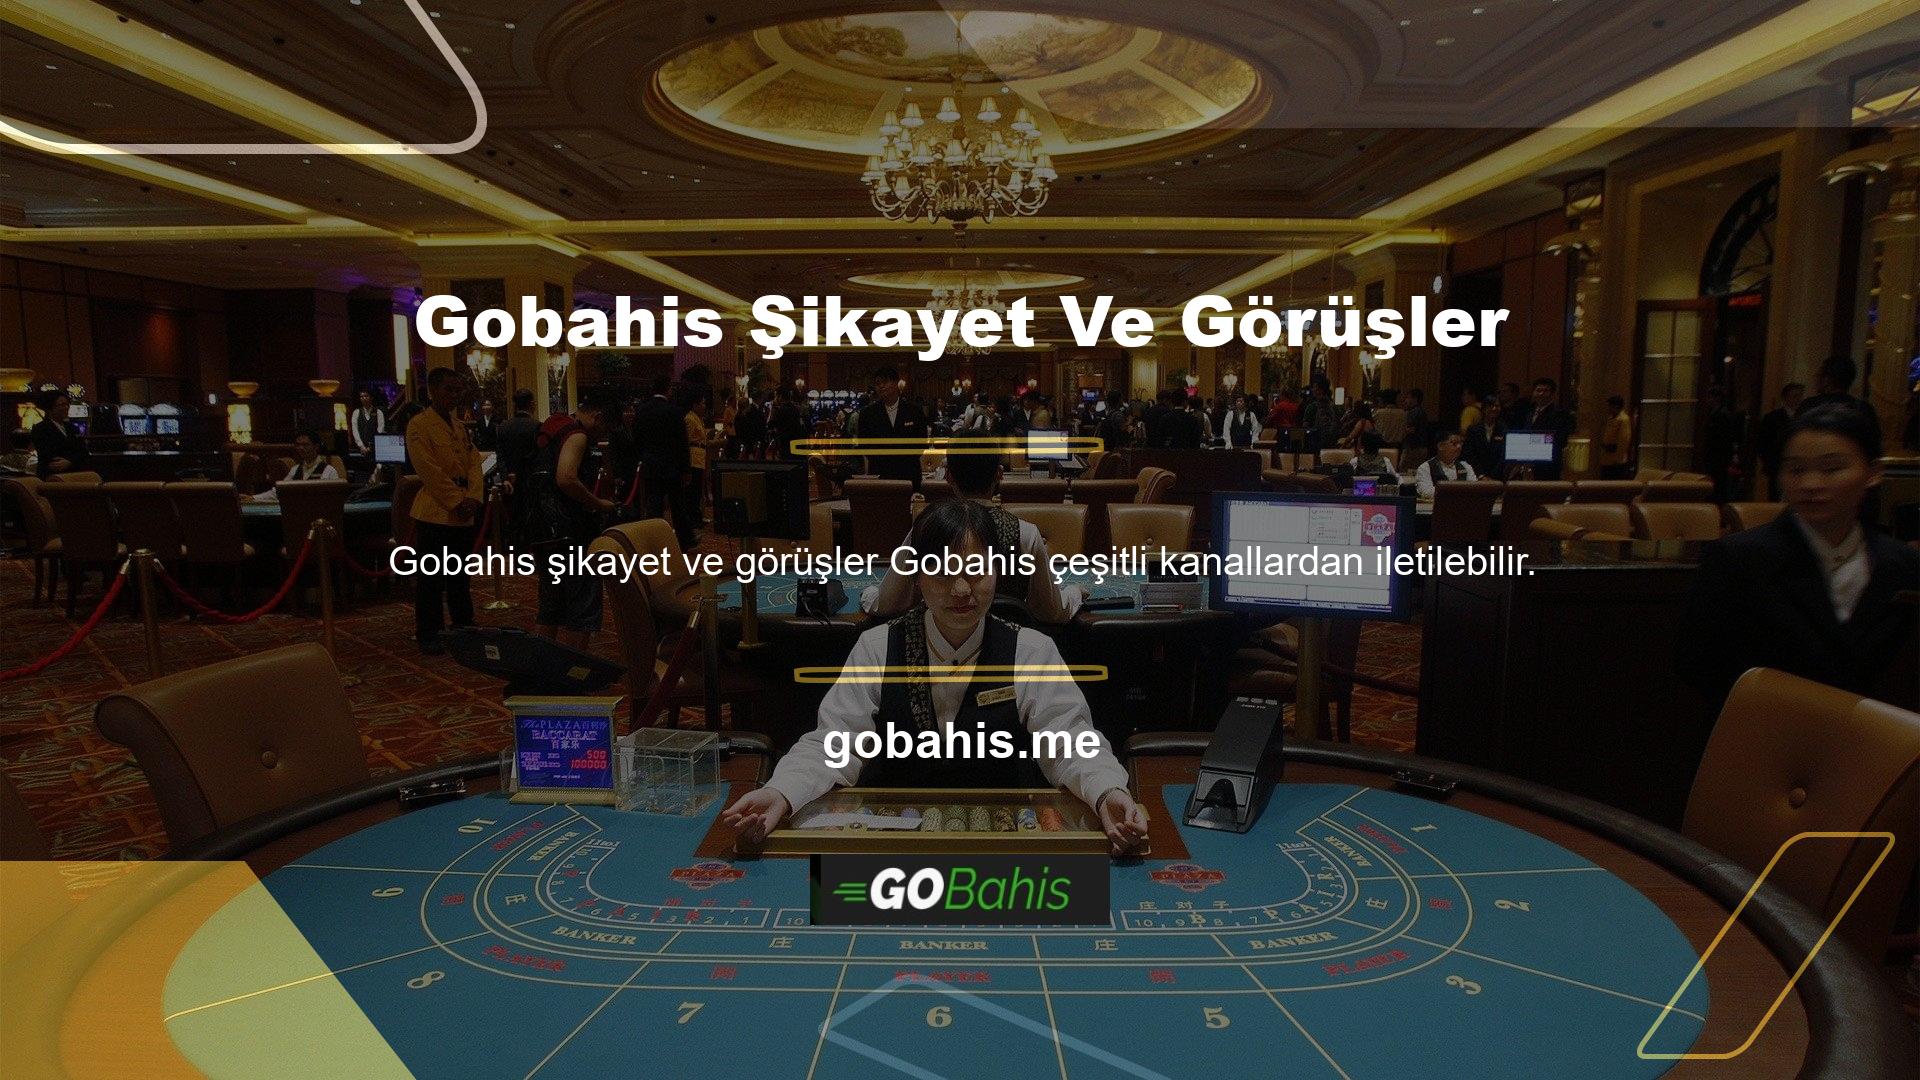 Çevrimiçi casino sitelerinde yetkililerle iletişime geçmek ve onlara görüş bildirmek çok kolaydır